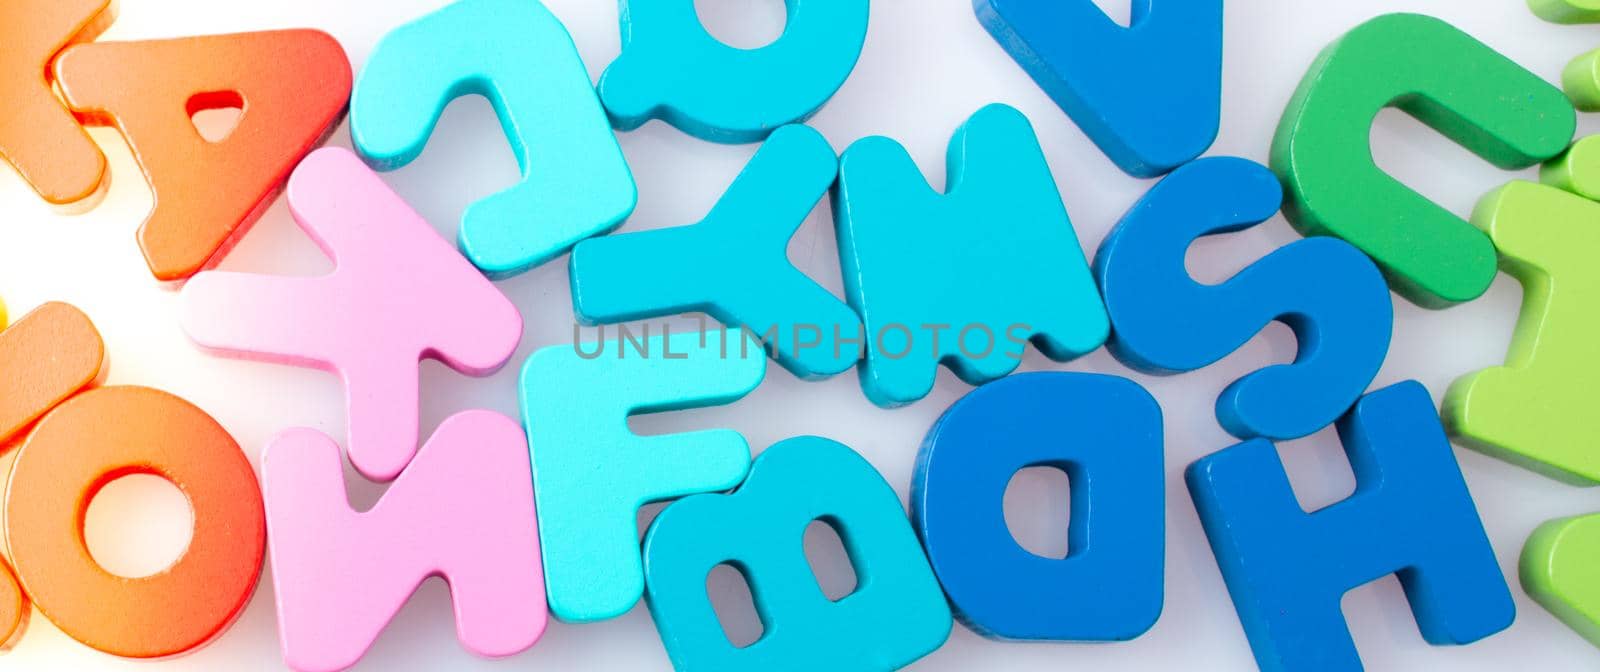 Colorful alphabet letter blocks scattered randomly on white background